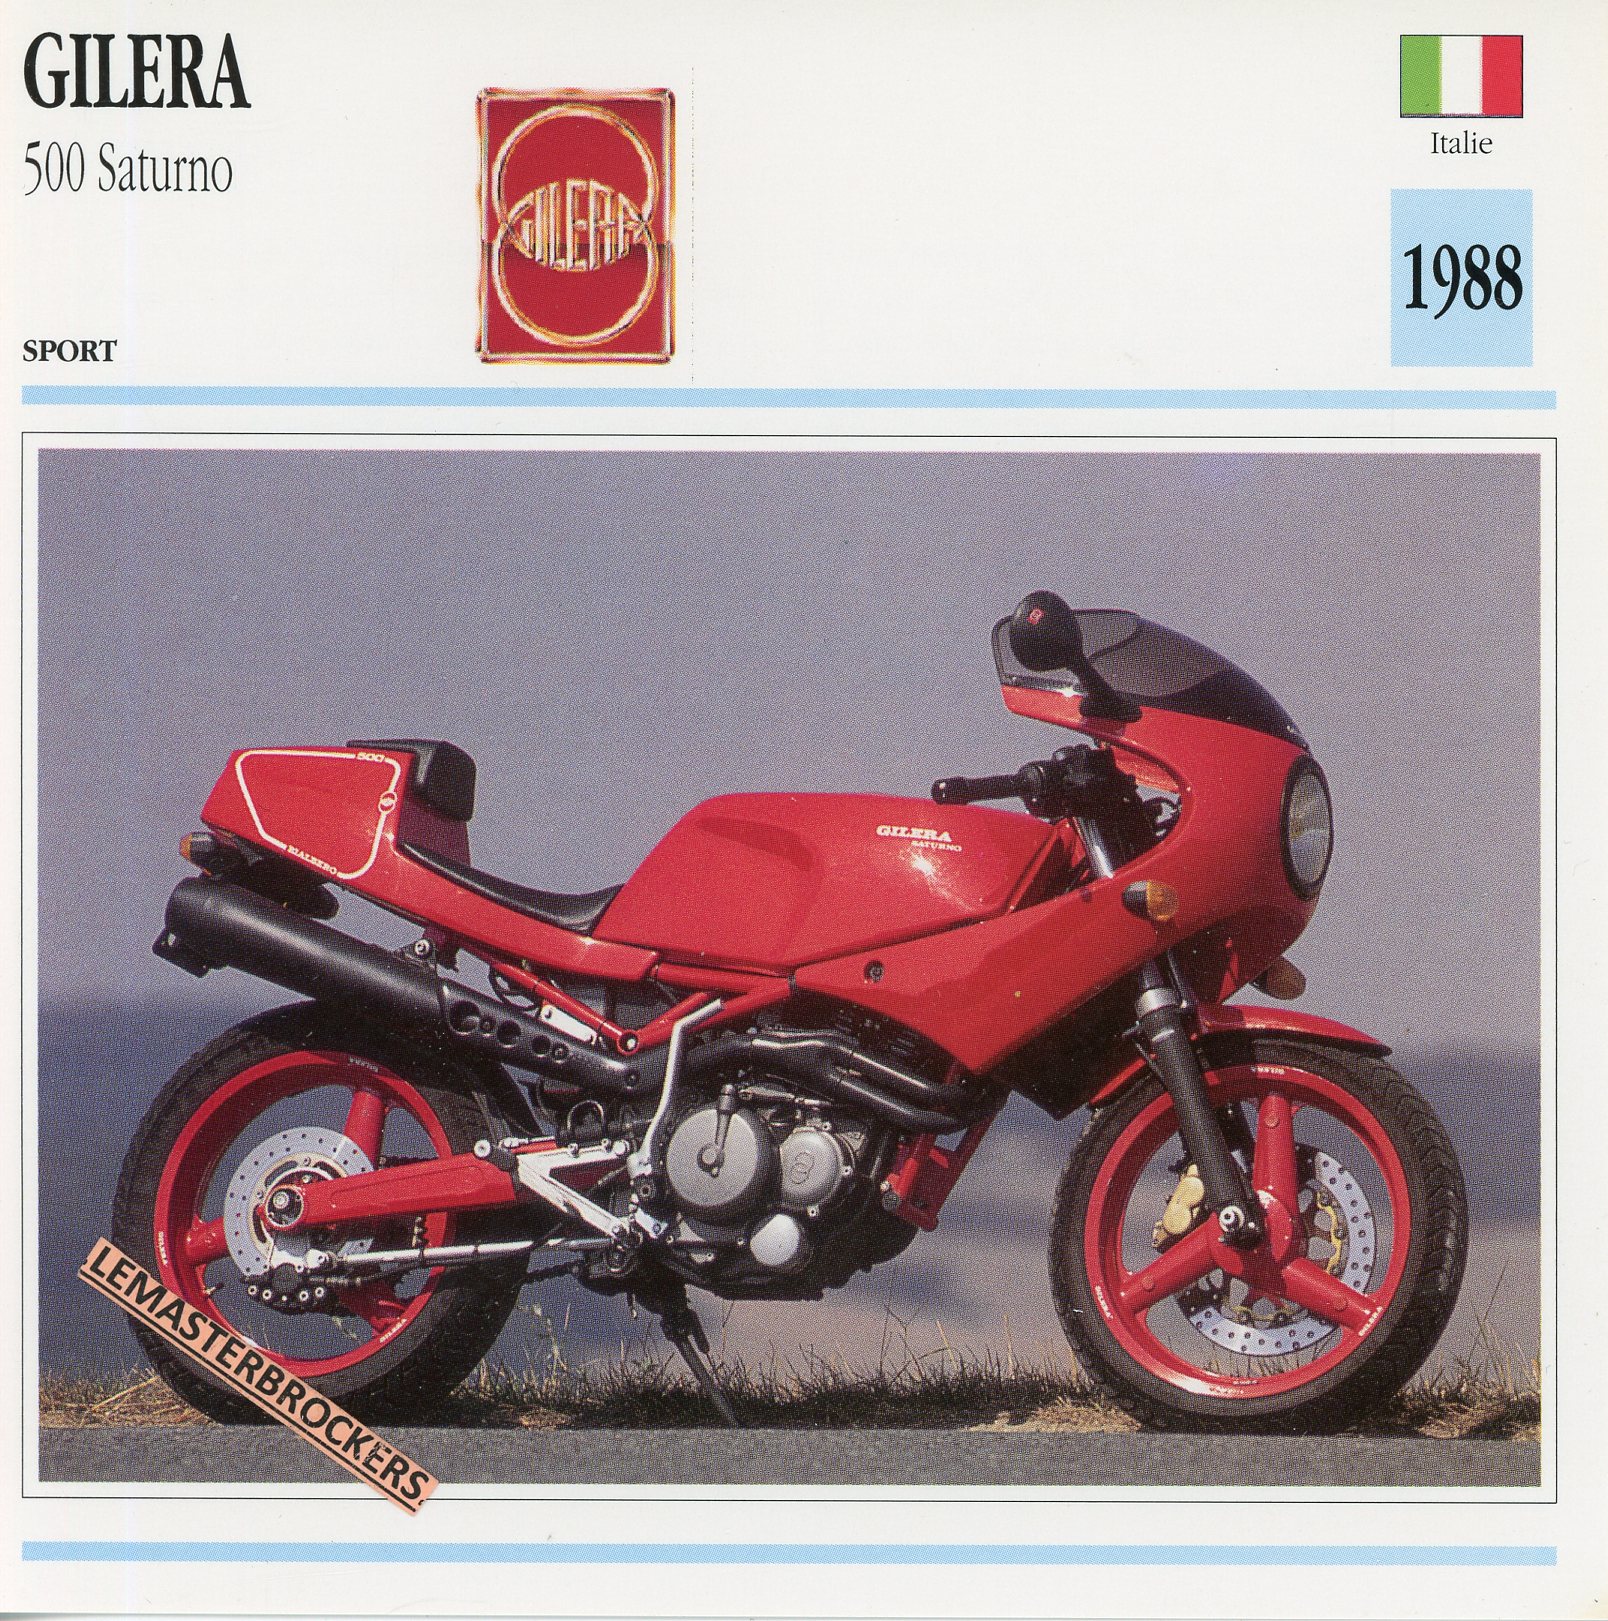 GILERA-500-SATURNO-1988-FICHE-MOTO-MOTORCYCLE-CARDS-ATLAS-LEMASTERBROCKERS